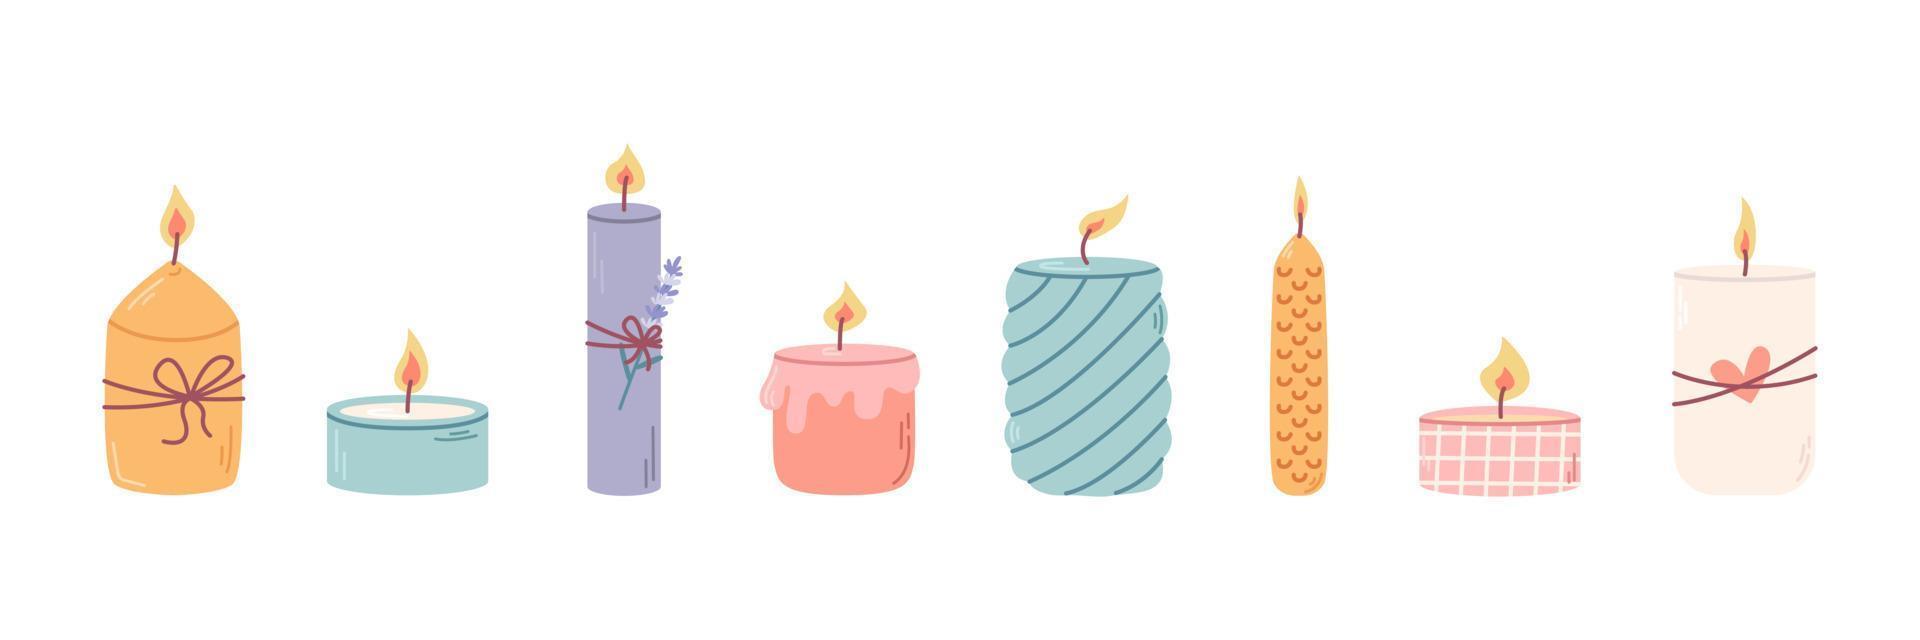 ensemble de différentes bougies parfumées décoratives en chandeliers pour la détente et le spa. illustration vectorielle plate vecteur